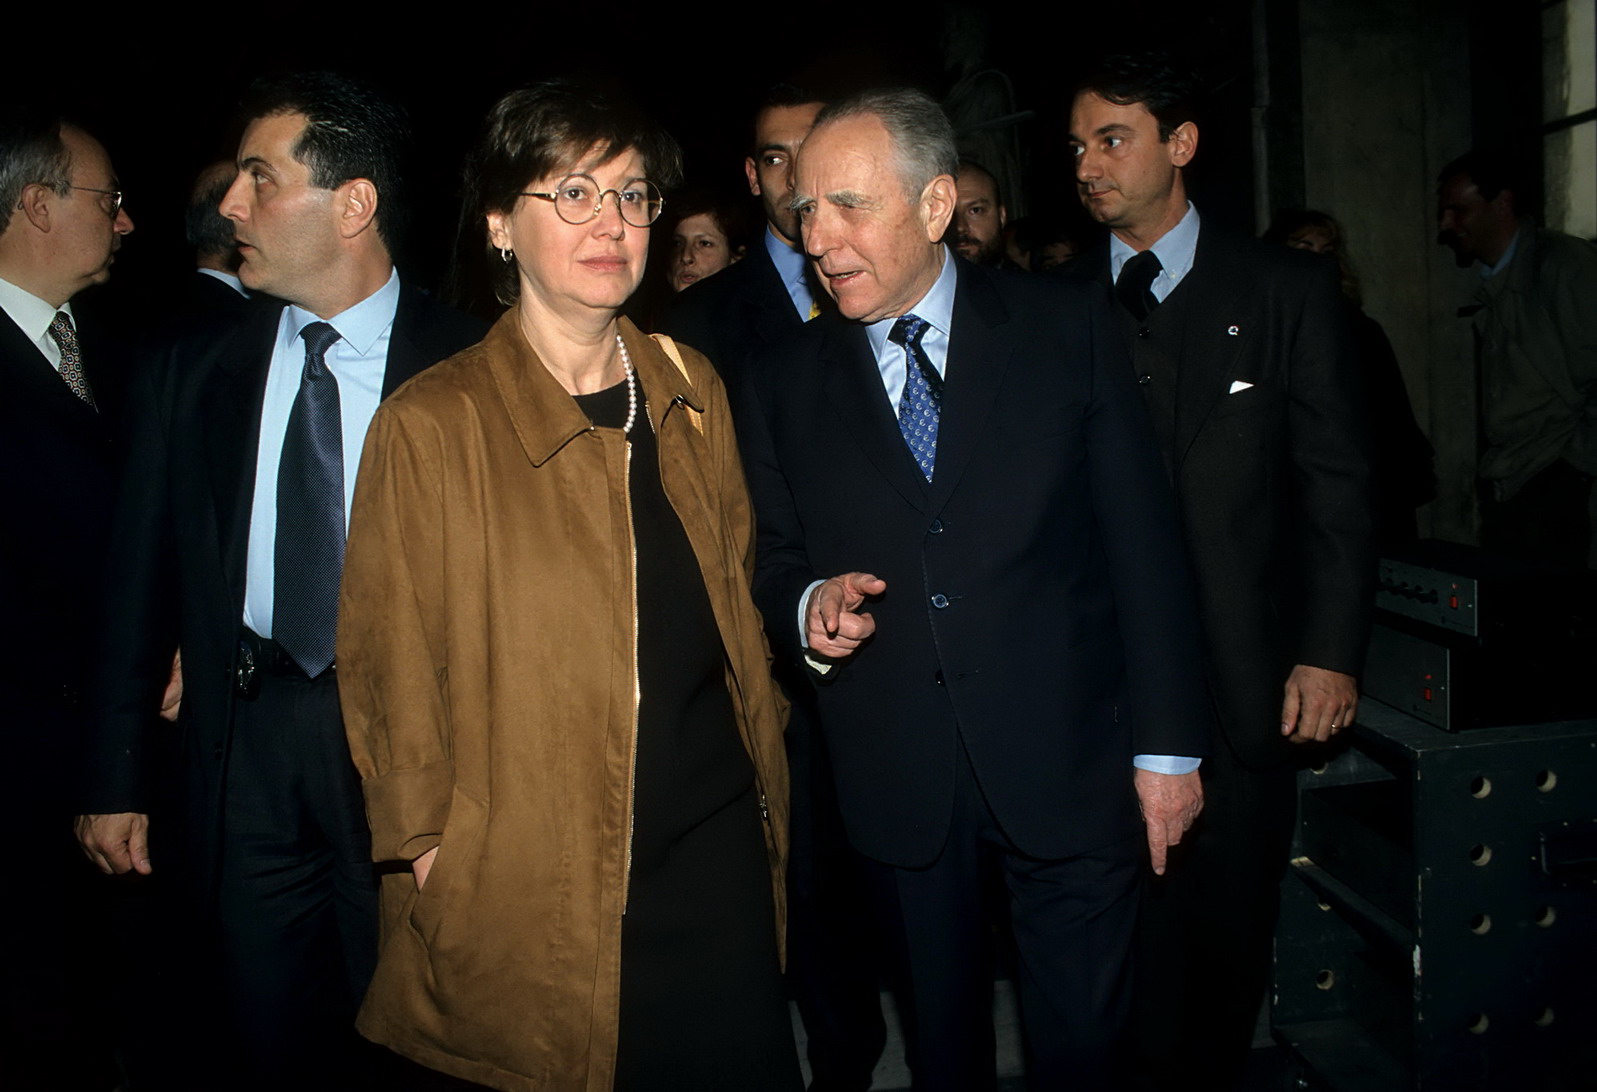 Linda lanzillotta, Carlo Azeglio Ciampi (1992)